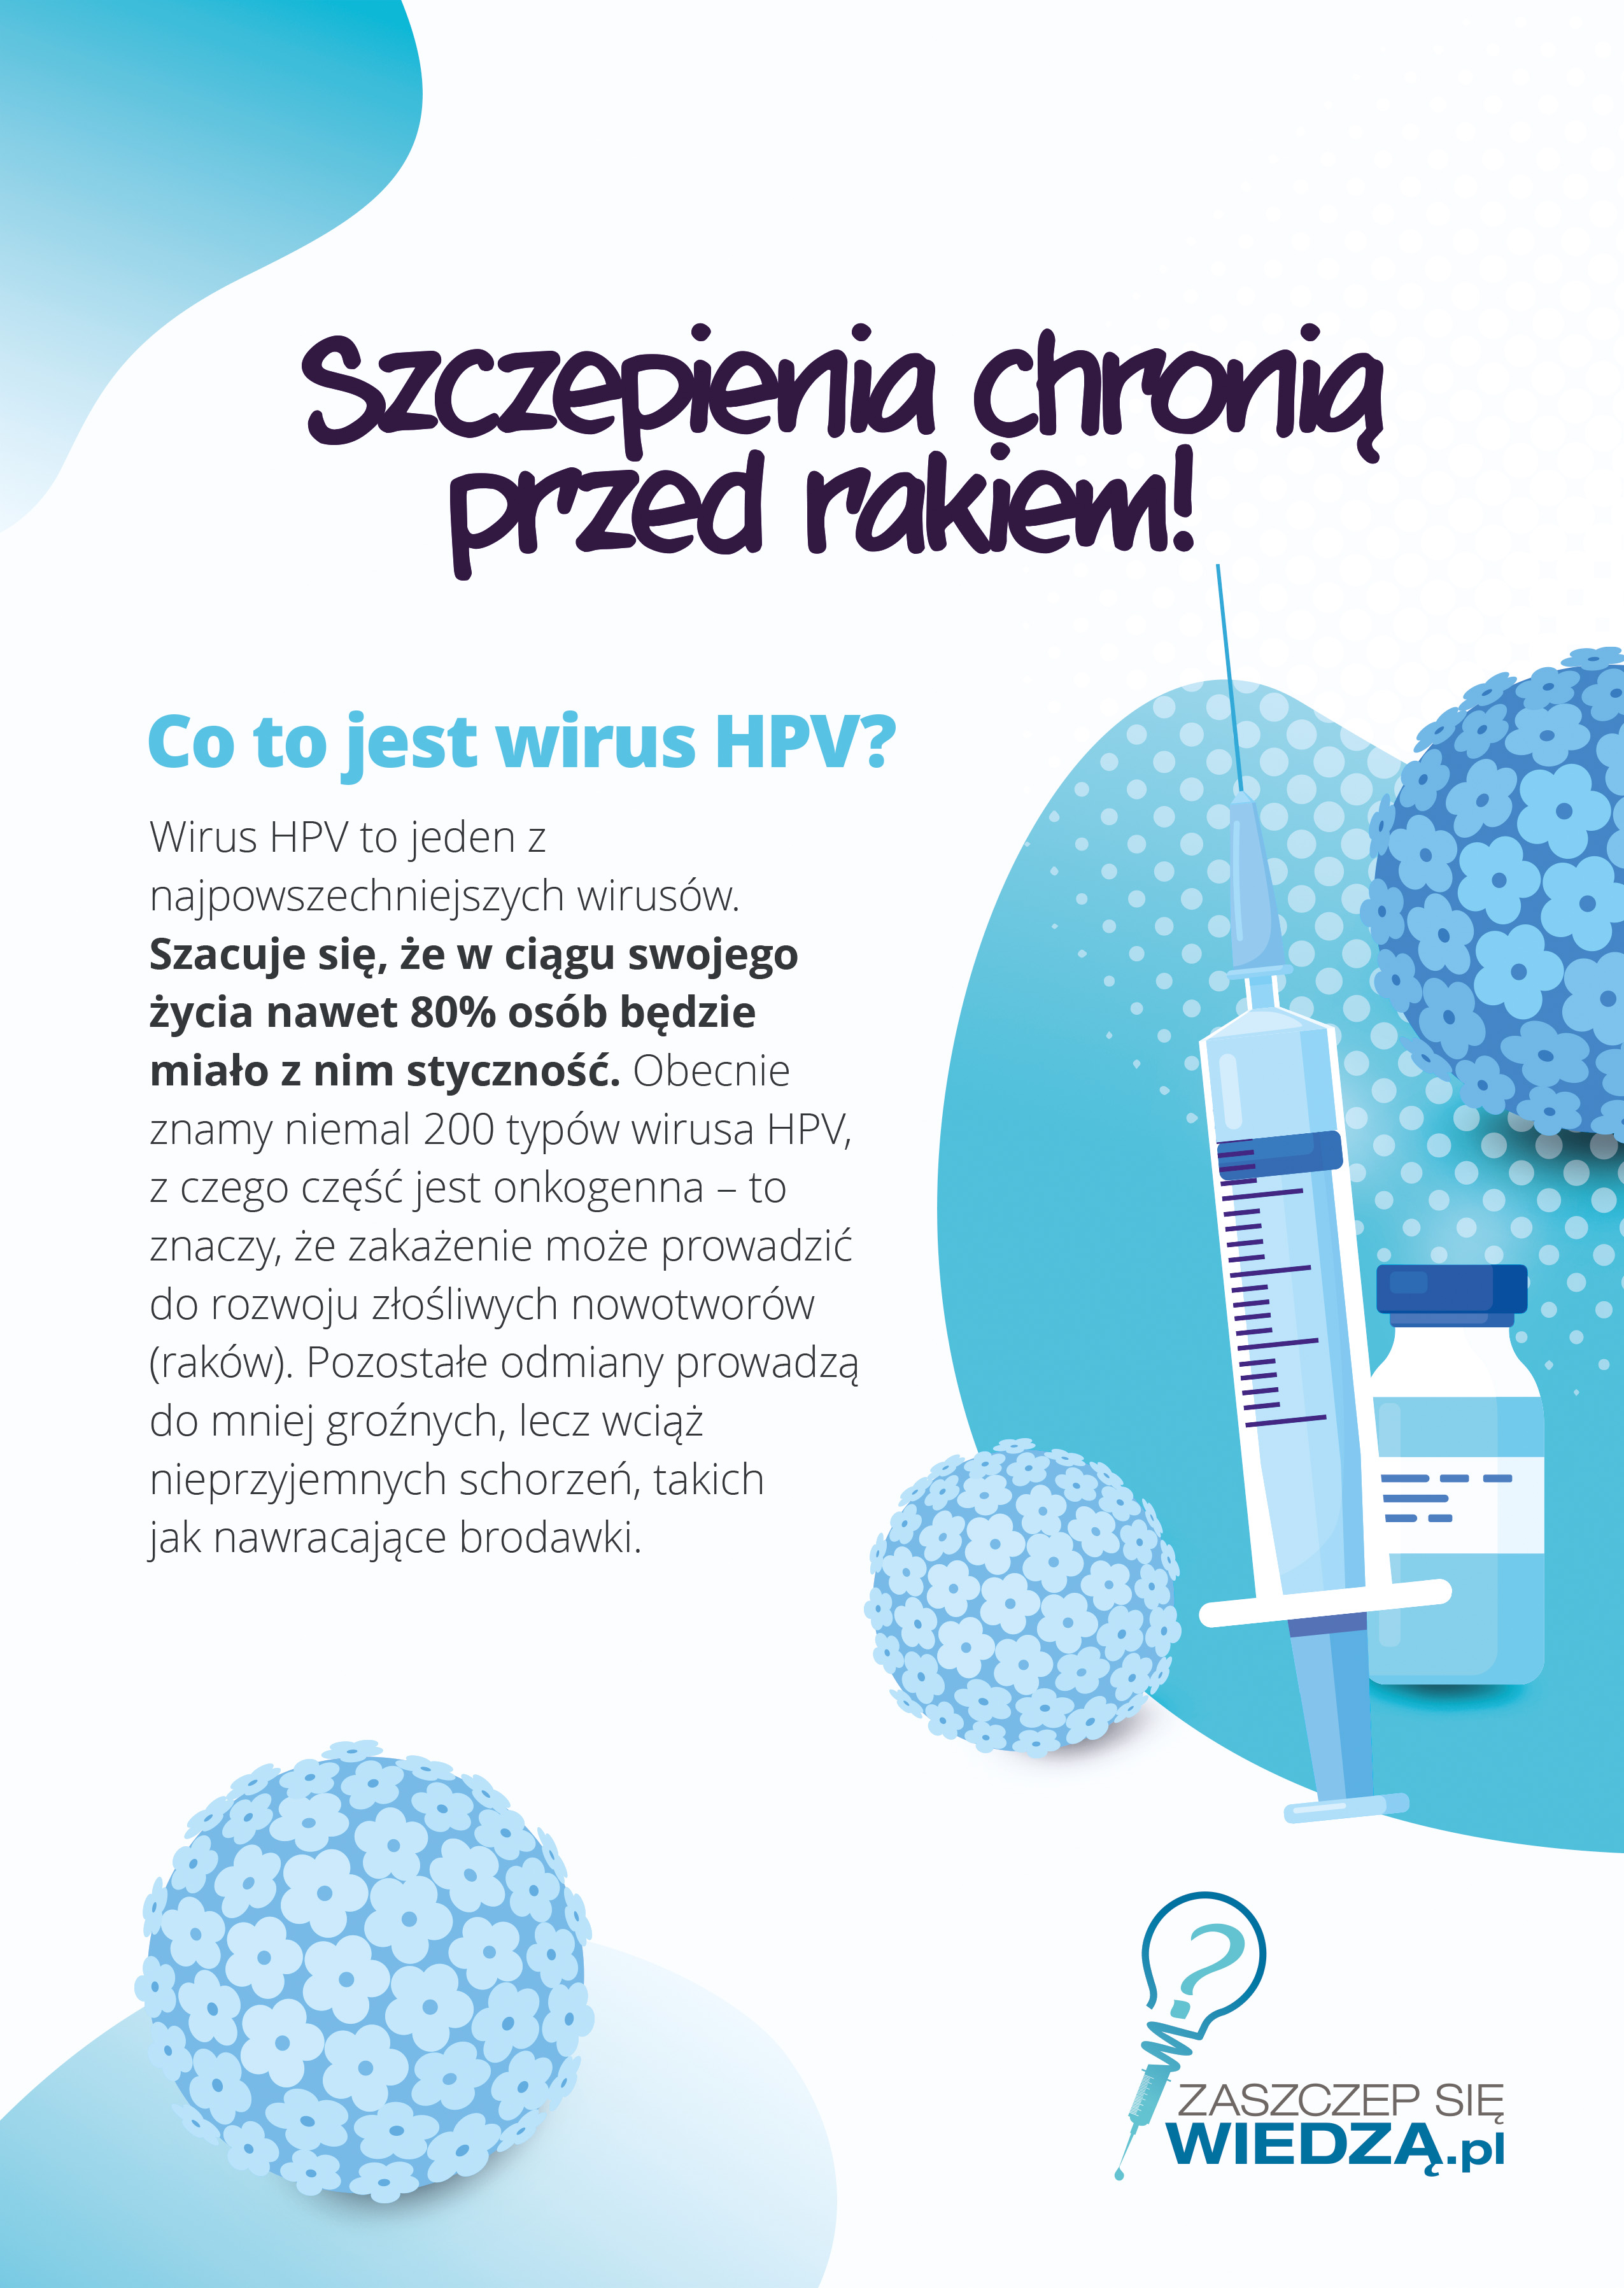 Bezpłatne i dobrowolne szczepienia przeciwko HPV dla dzieci w wieku 12-13 lat.